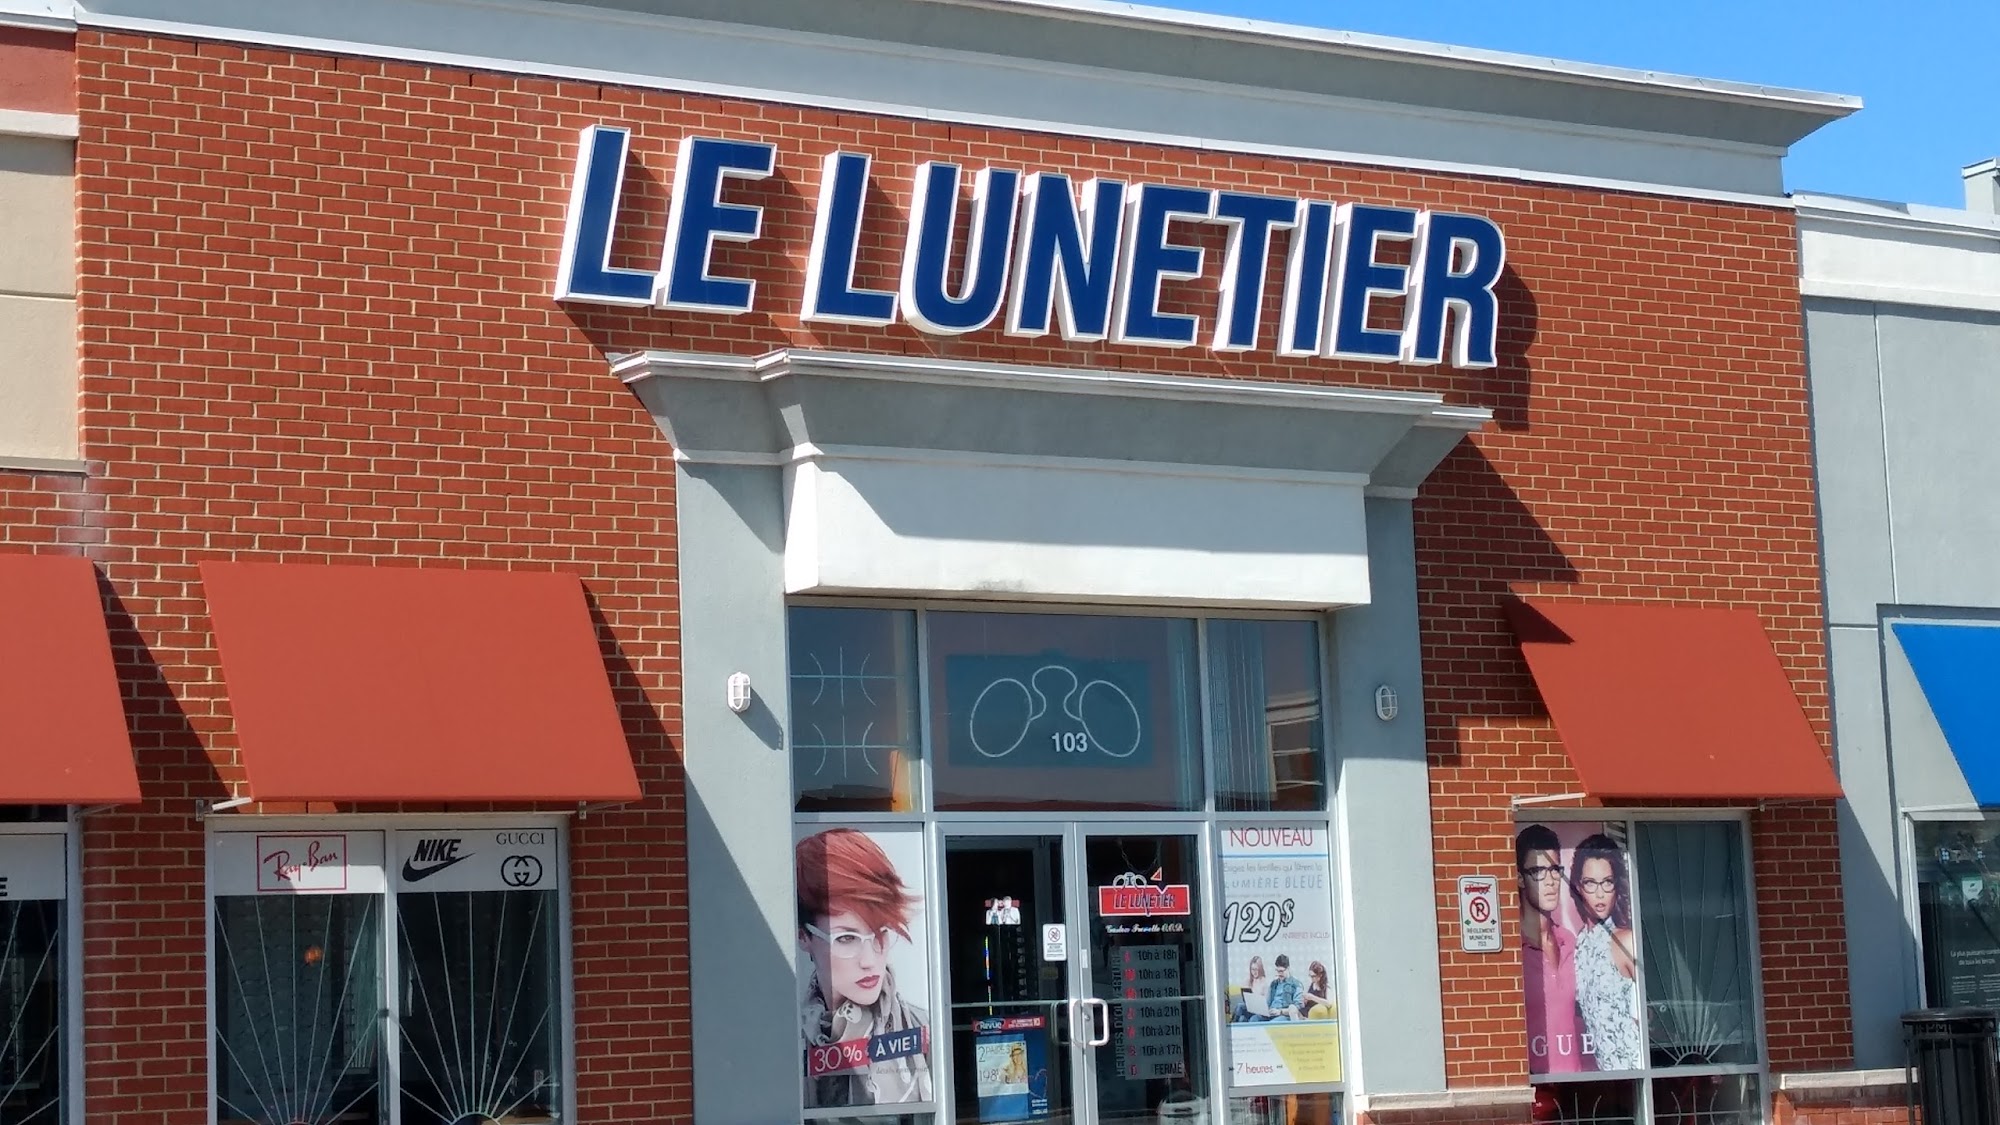 Le Lunetier Mascouche - Opticien et examen de la vue par un Optométriste 103 Mnt Masson, Mascouche Quebec J7K 3B4